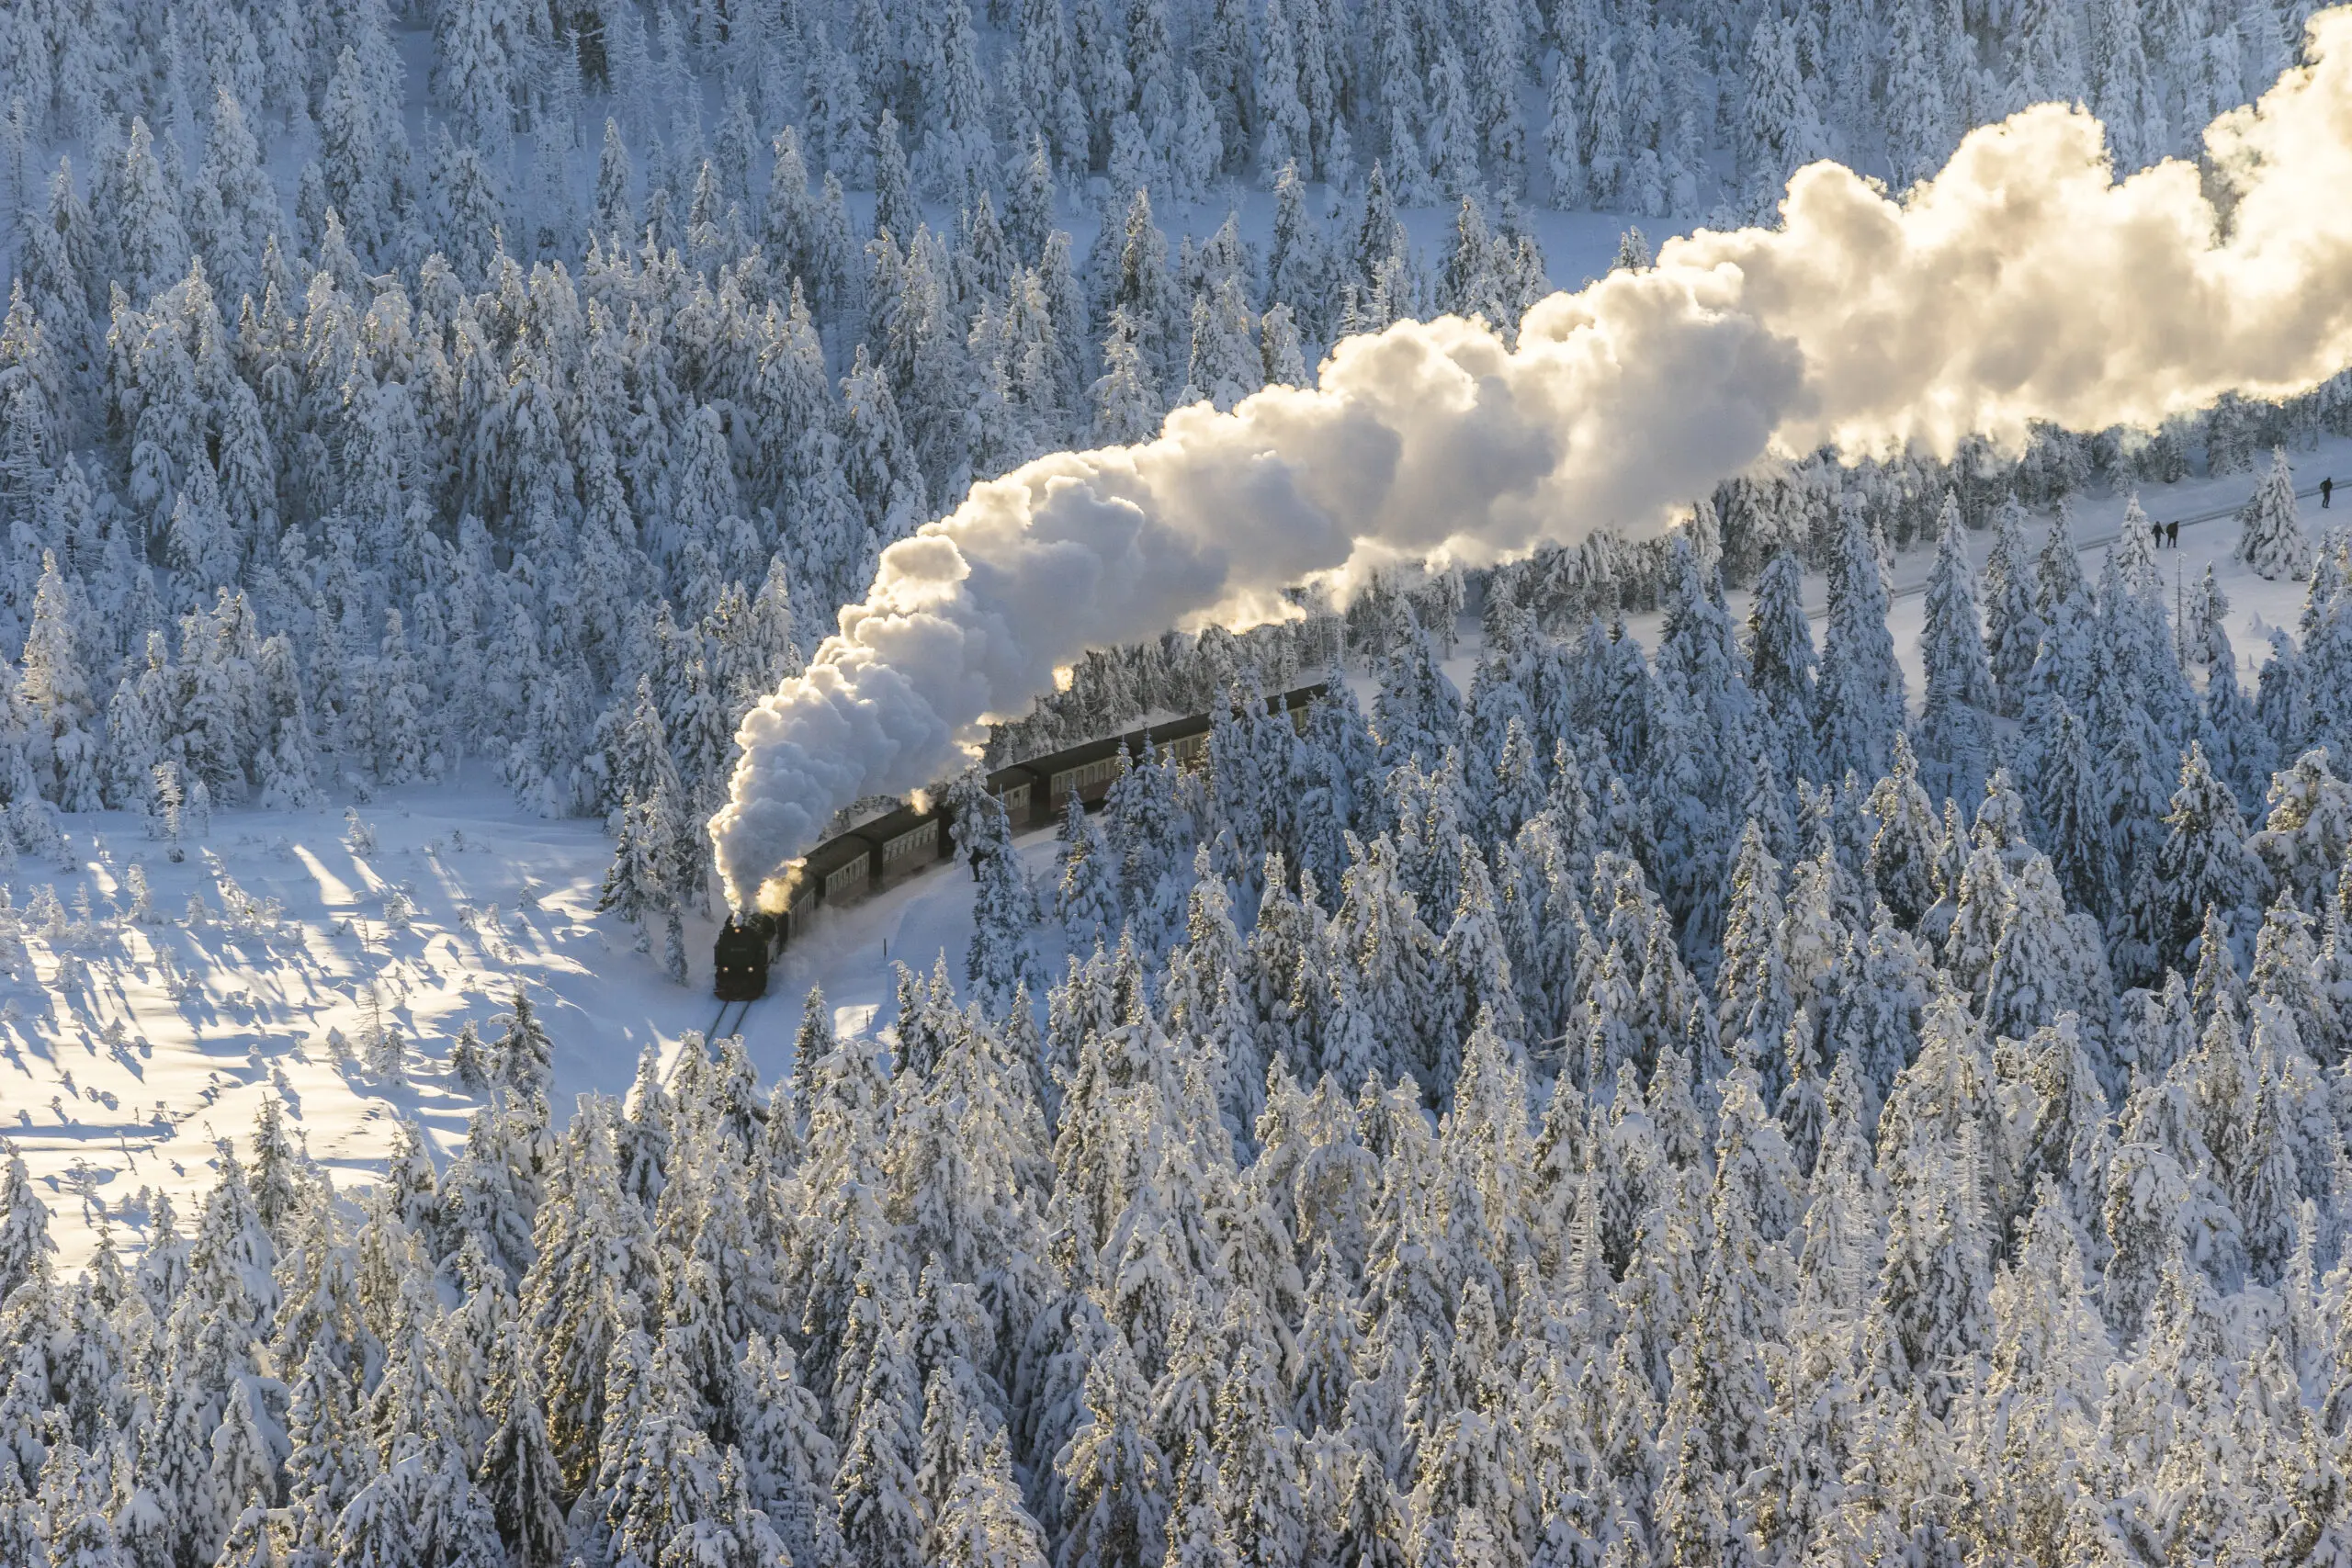 Wandbild (5188) Harzer Schmalspurbahn im Winter präsentiert: Technik,Landschaften,Schnee und Eis,Wälder,Winter,Berge,Eisenbahn